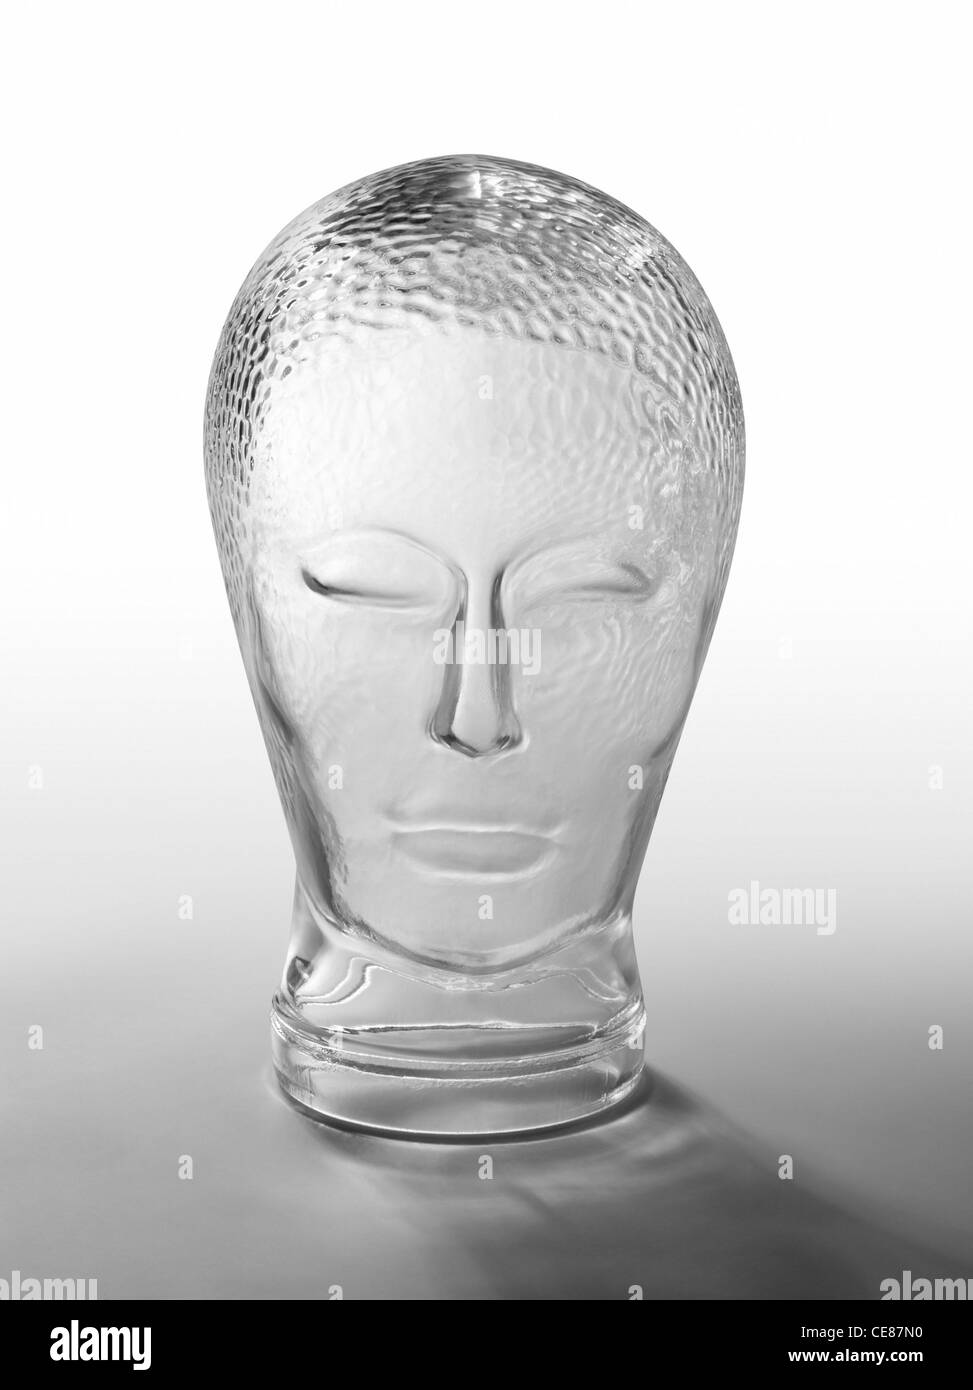 Tiré d'un profil humain générique "factices" tête en verre gris dégradé en retour, with clipping path Banque D'Images